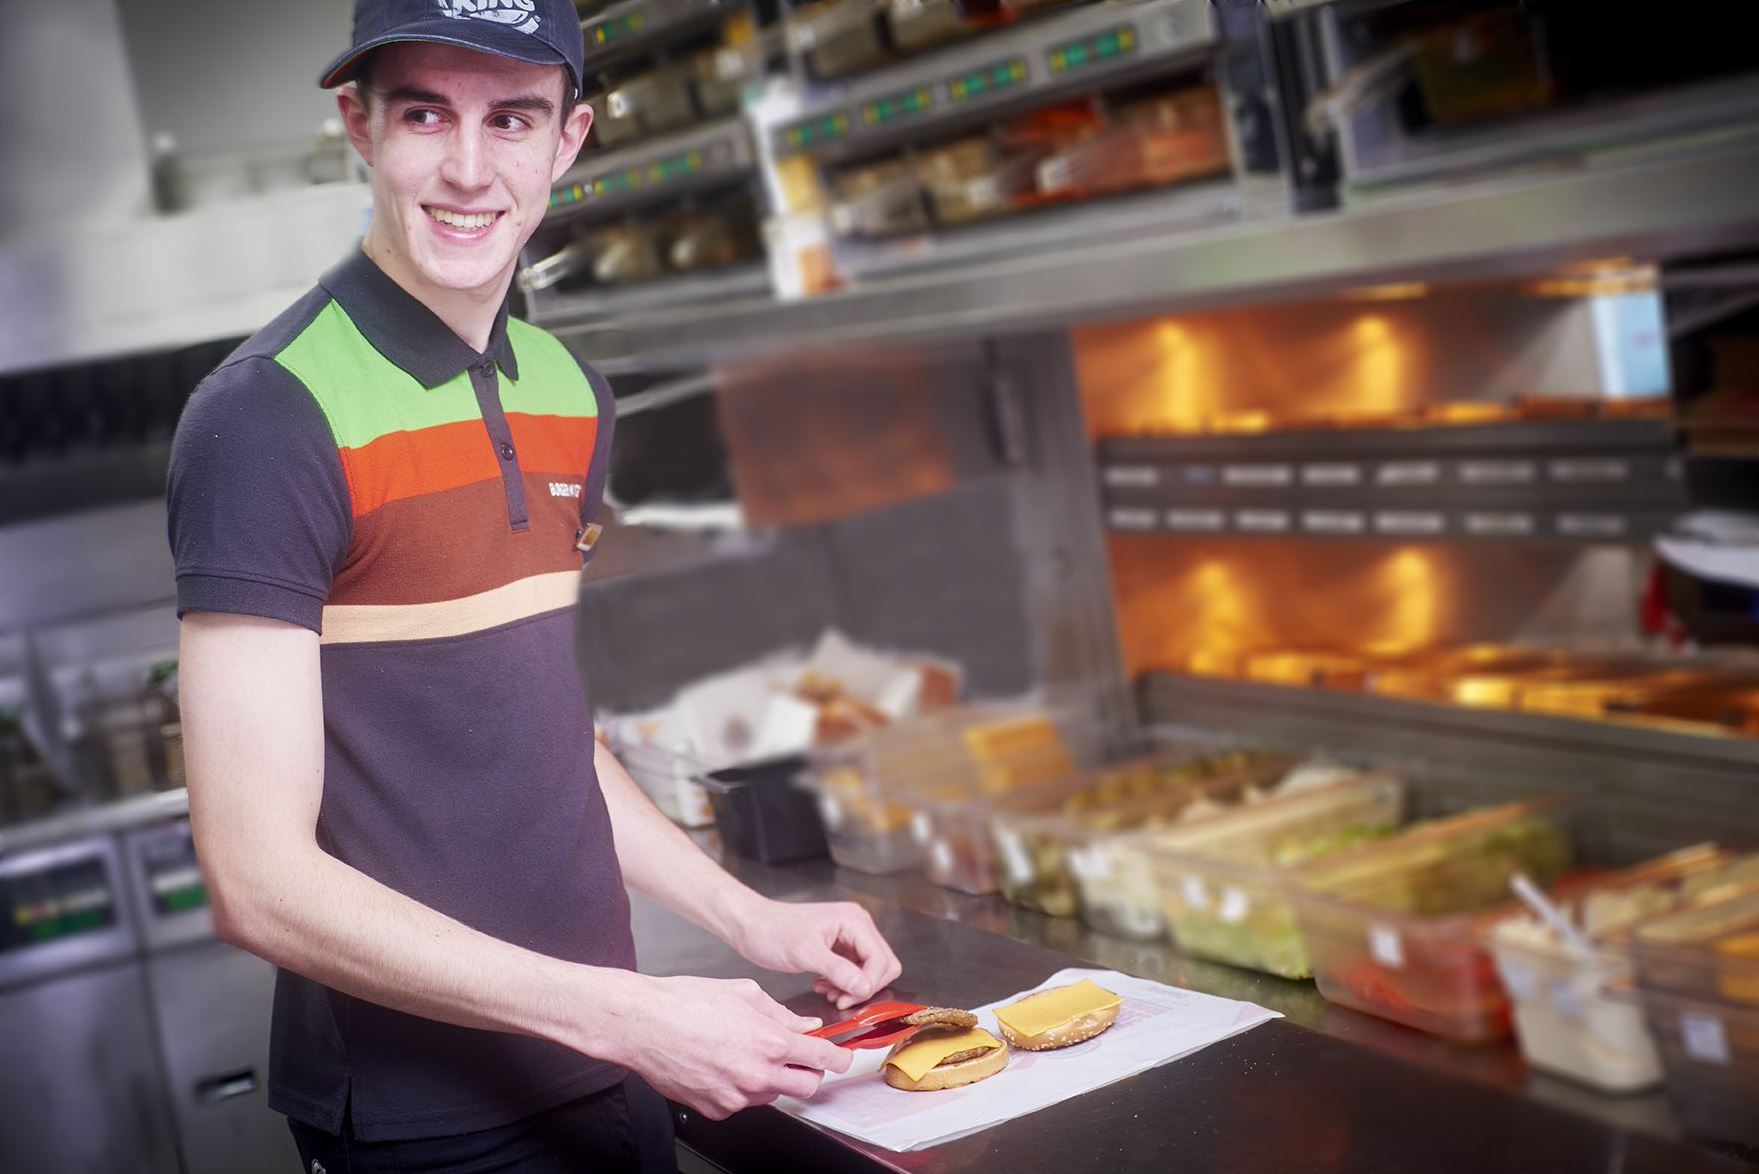 Kitchen Team Member in Burger King uniform at Welcome Break arranges a burger